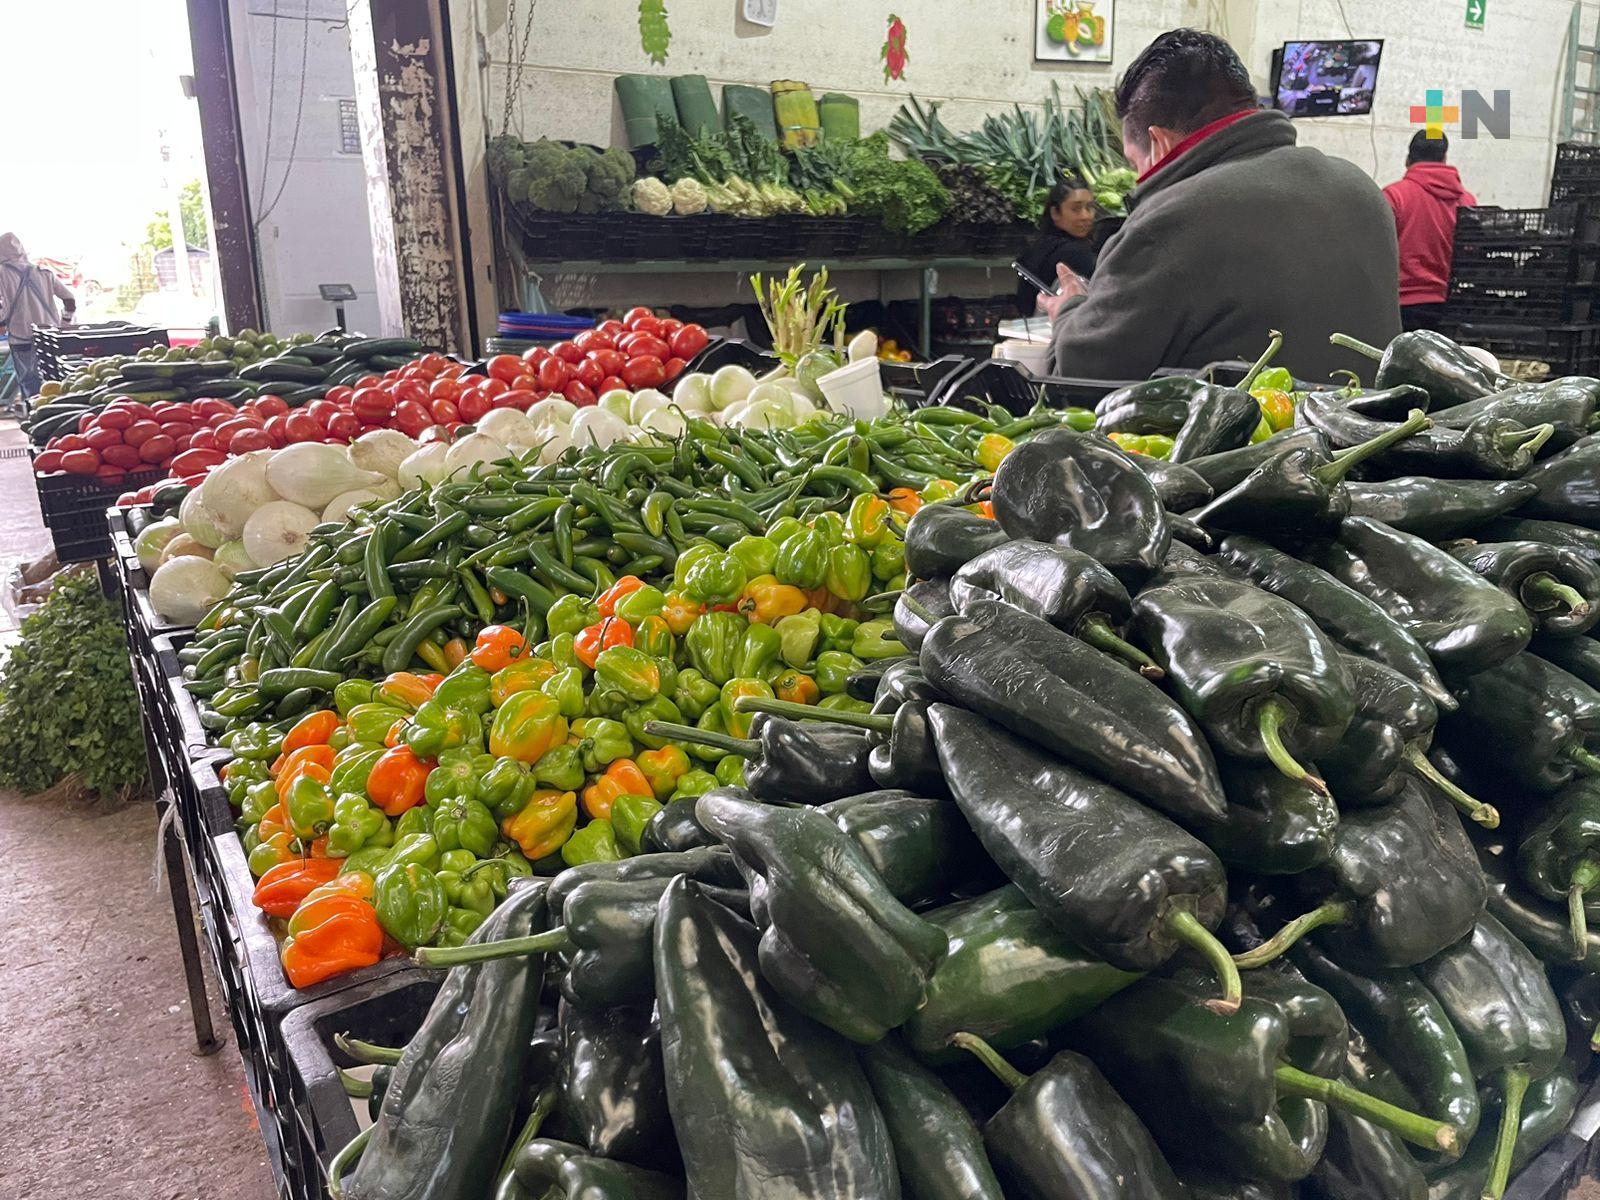 Bajas temperaturas y costo de gasolina aumentan precios de verduras